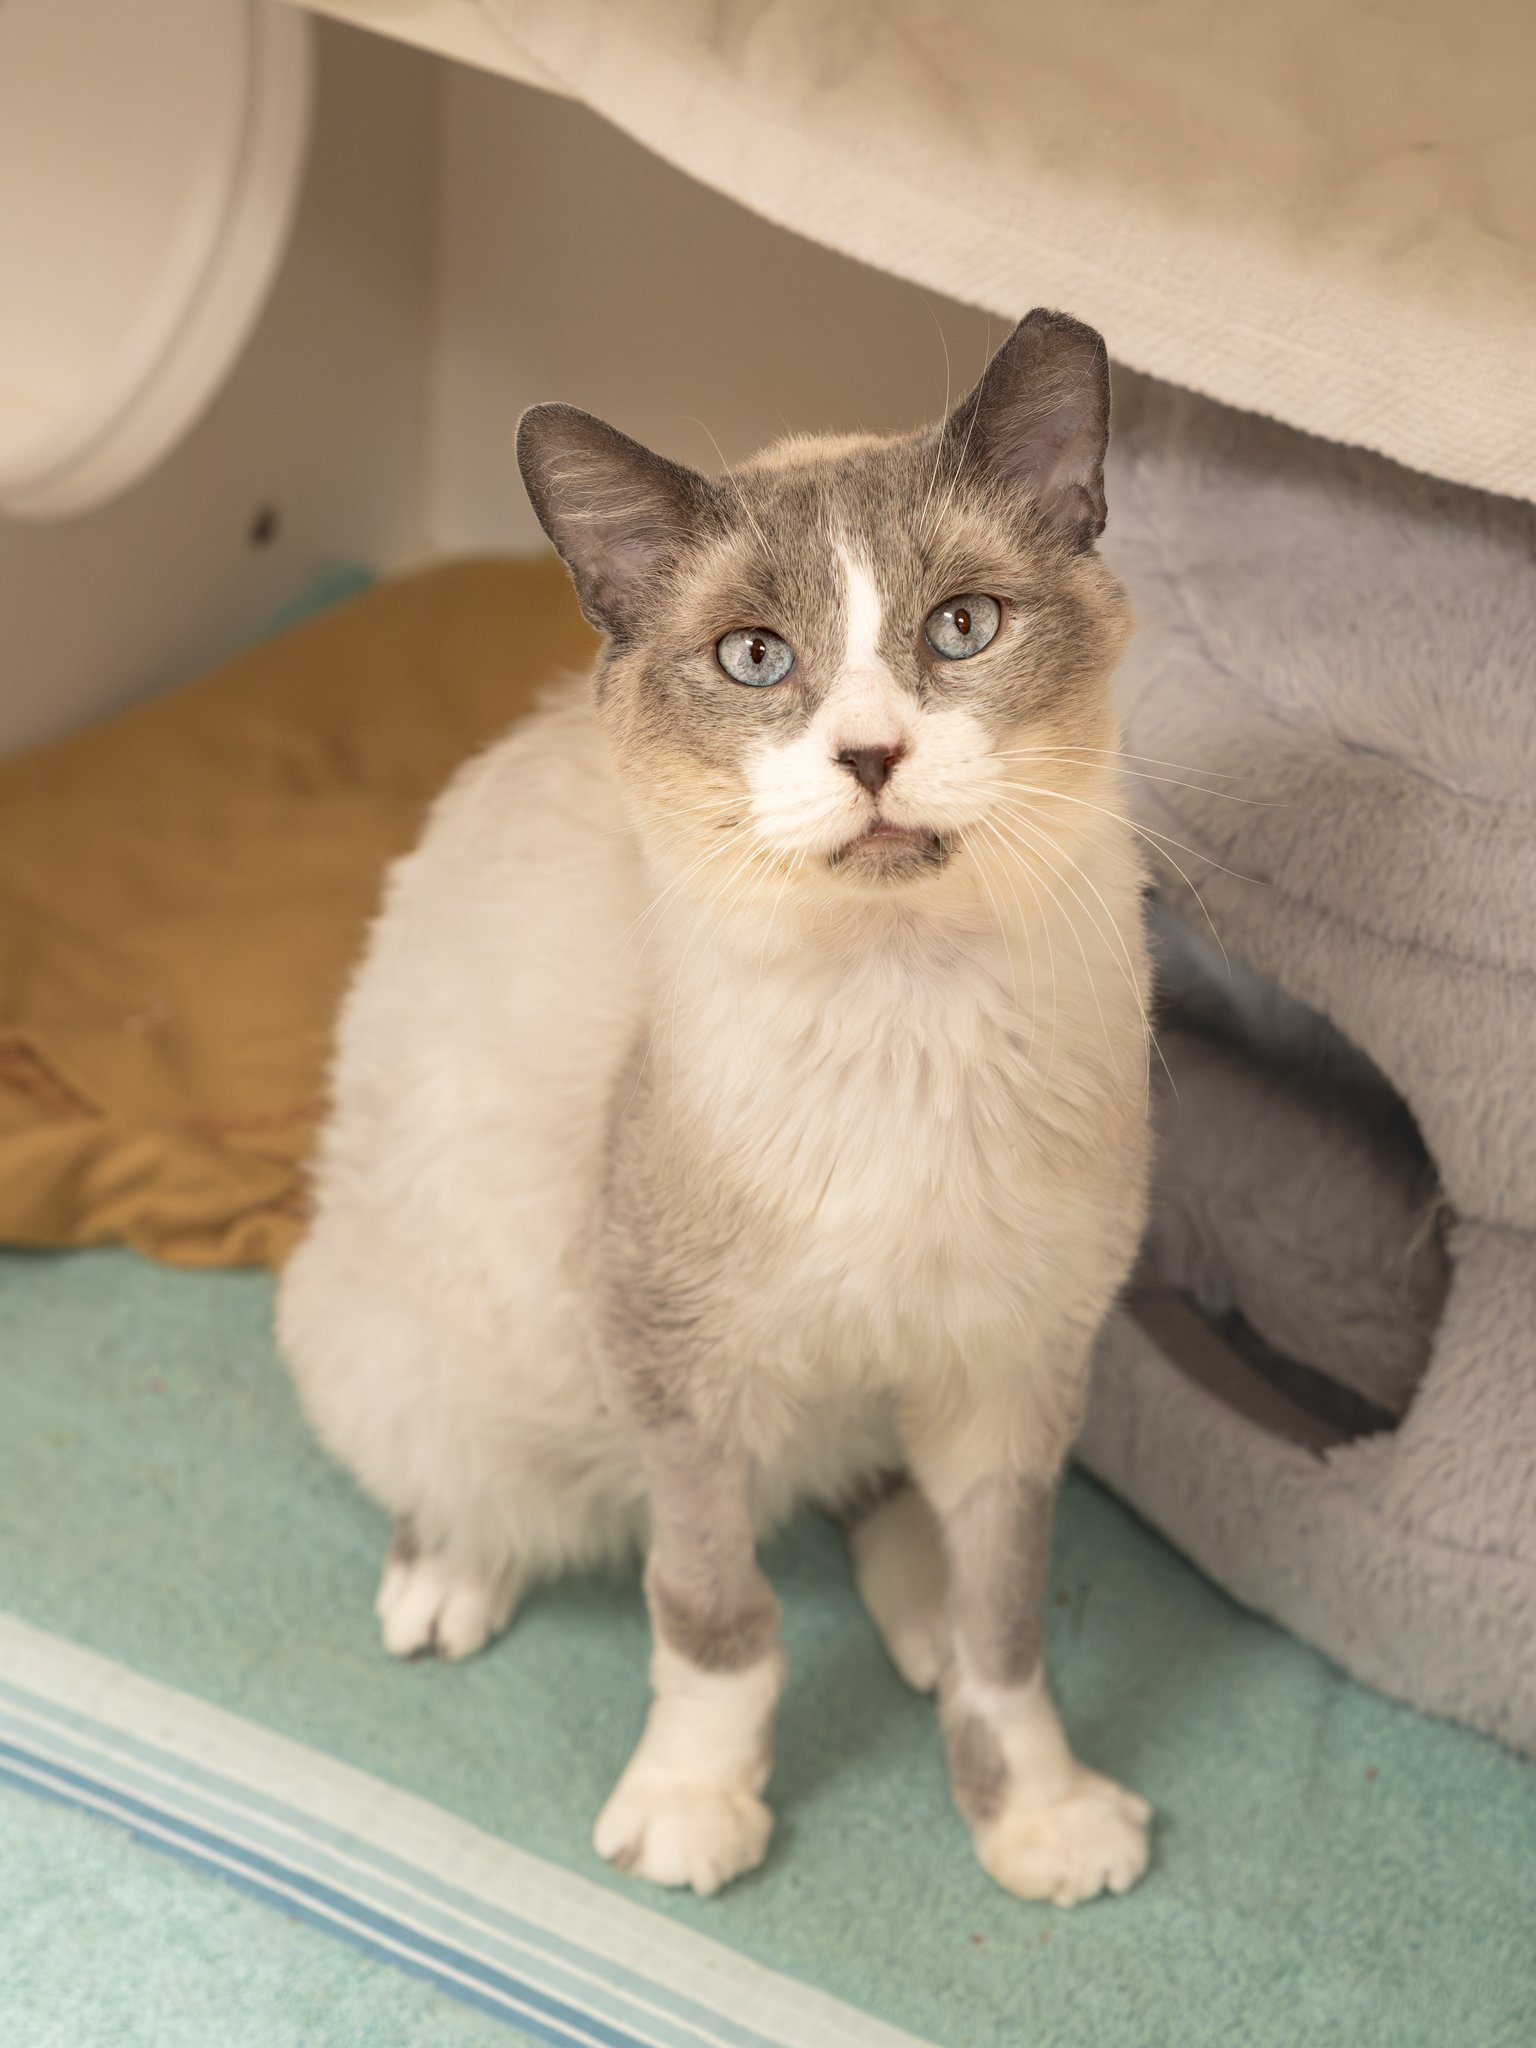 adoptable Cat in Philadelphia, PA named FeLVis Presley